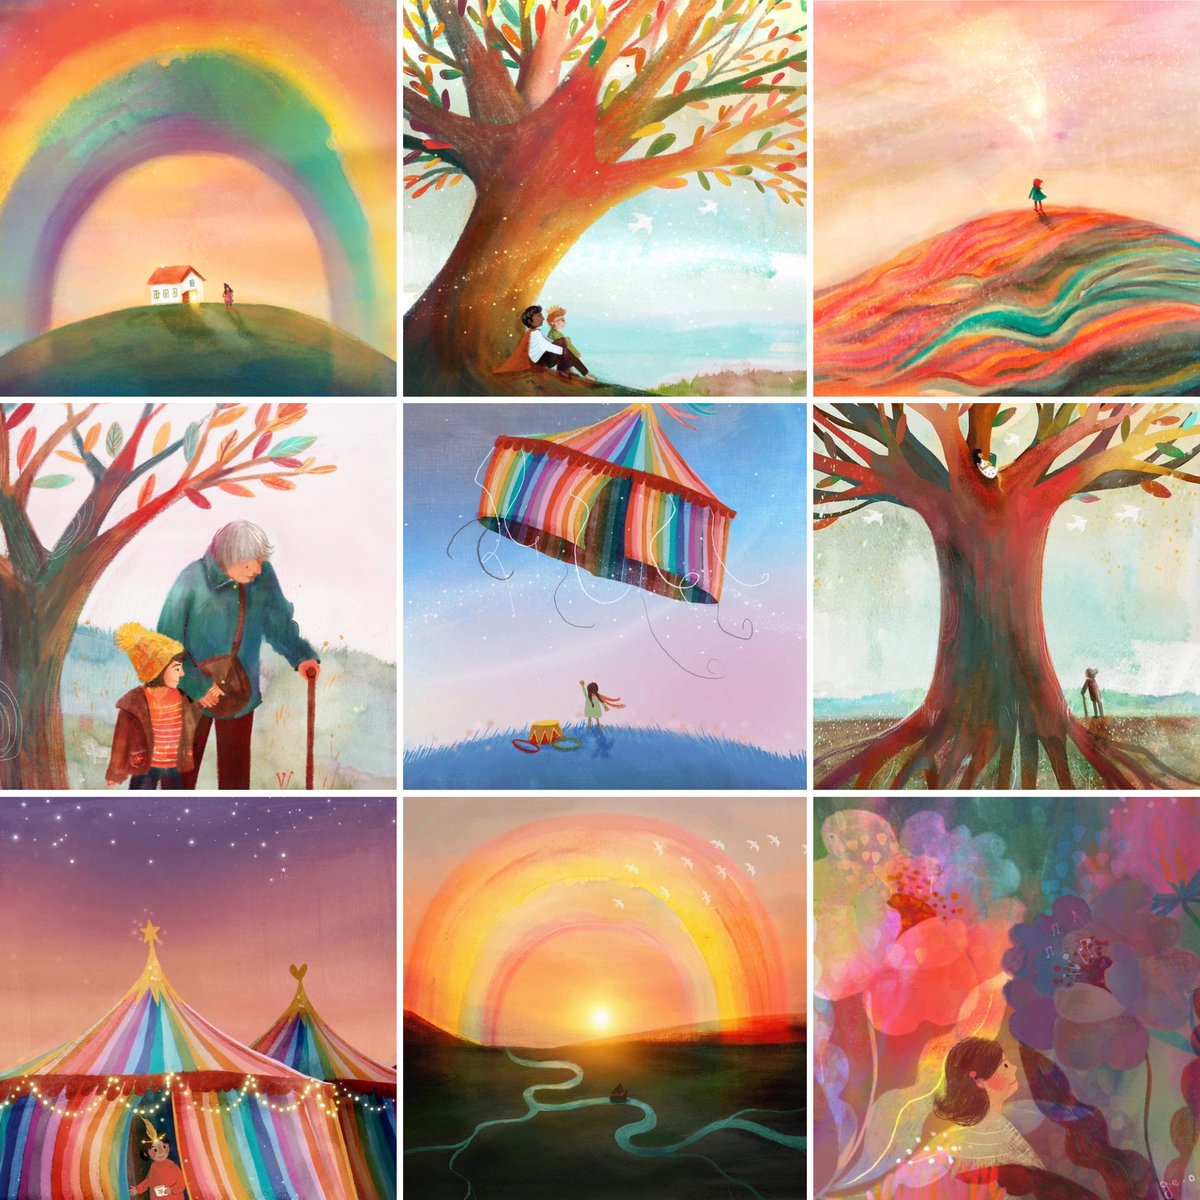 Rainbow-ish doodles 

#kidlit #kidlitart #illustrator #rainbow